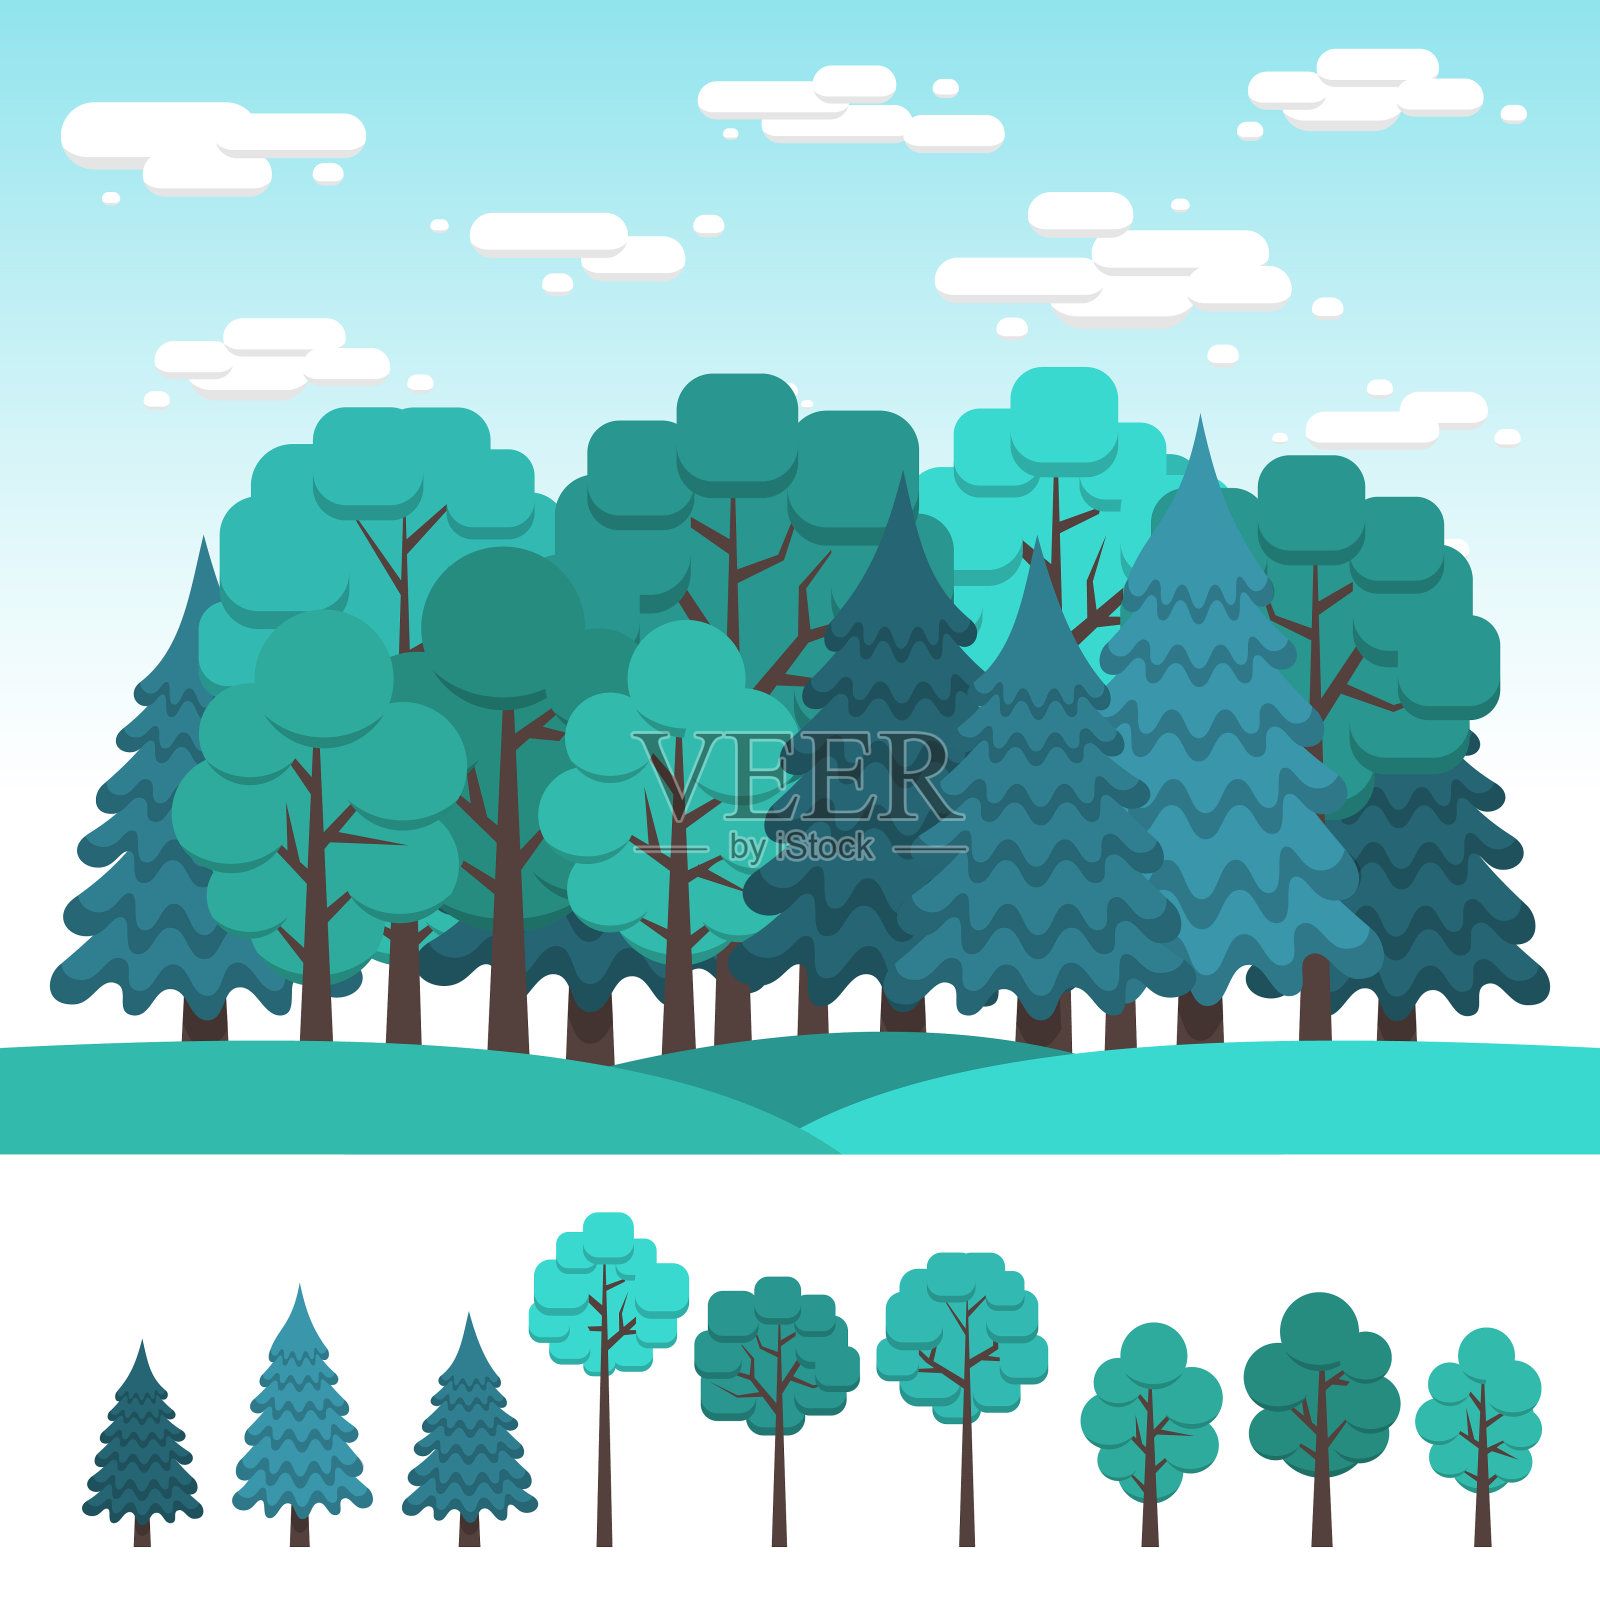 一套为景观设计的落叶和针叶树插画图片素材